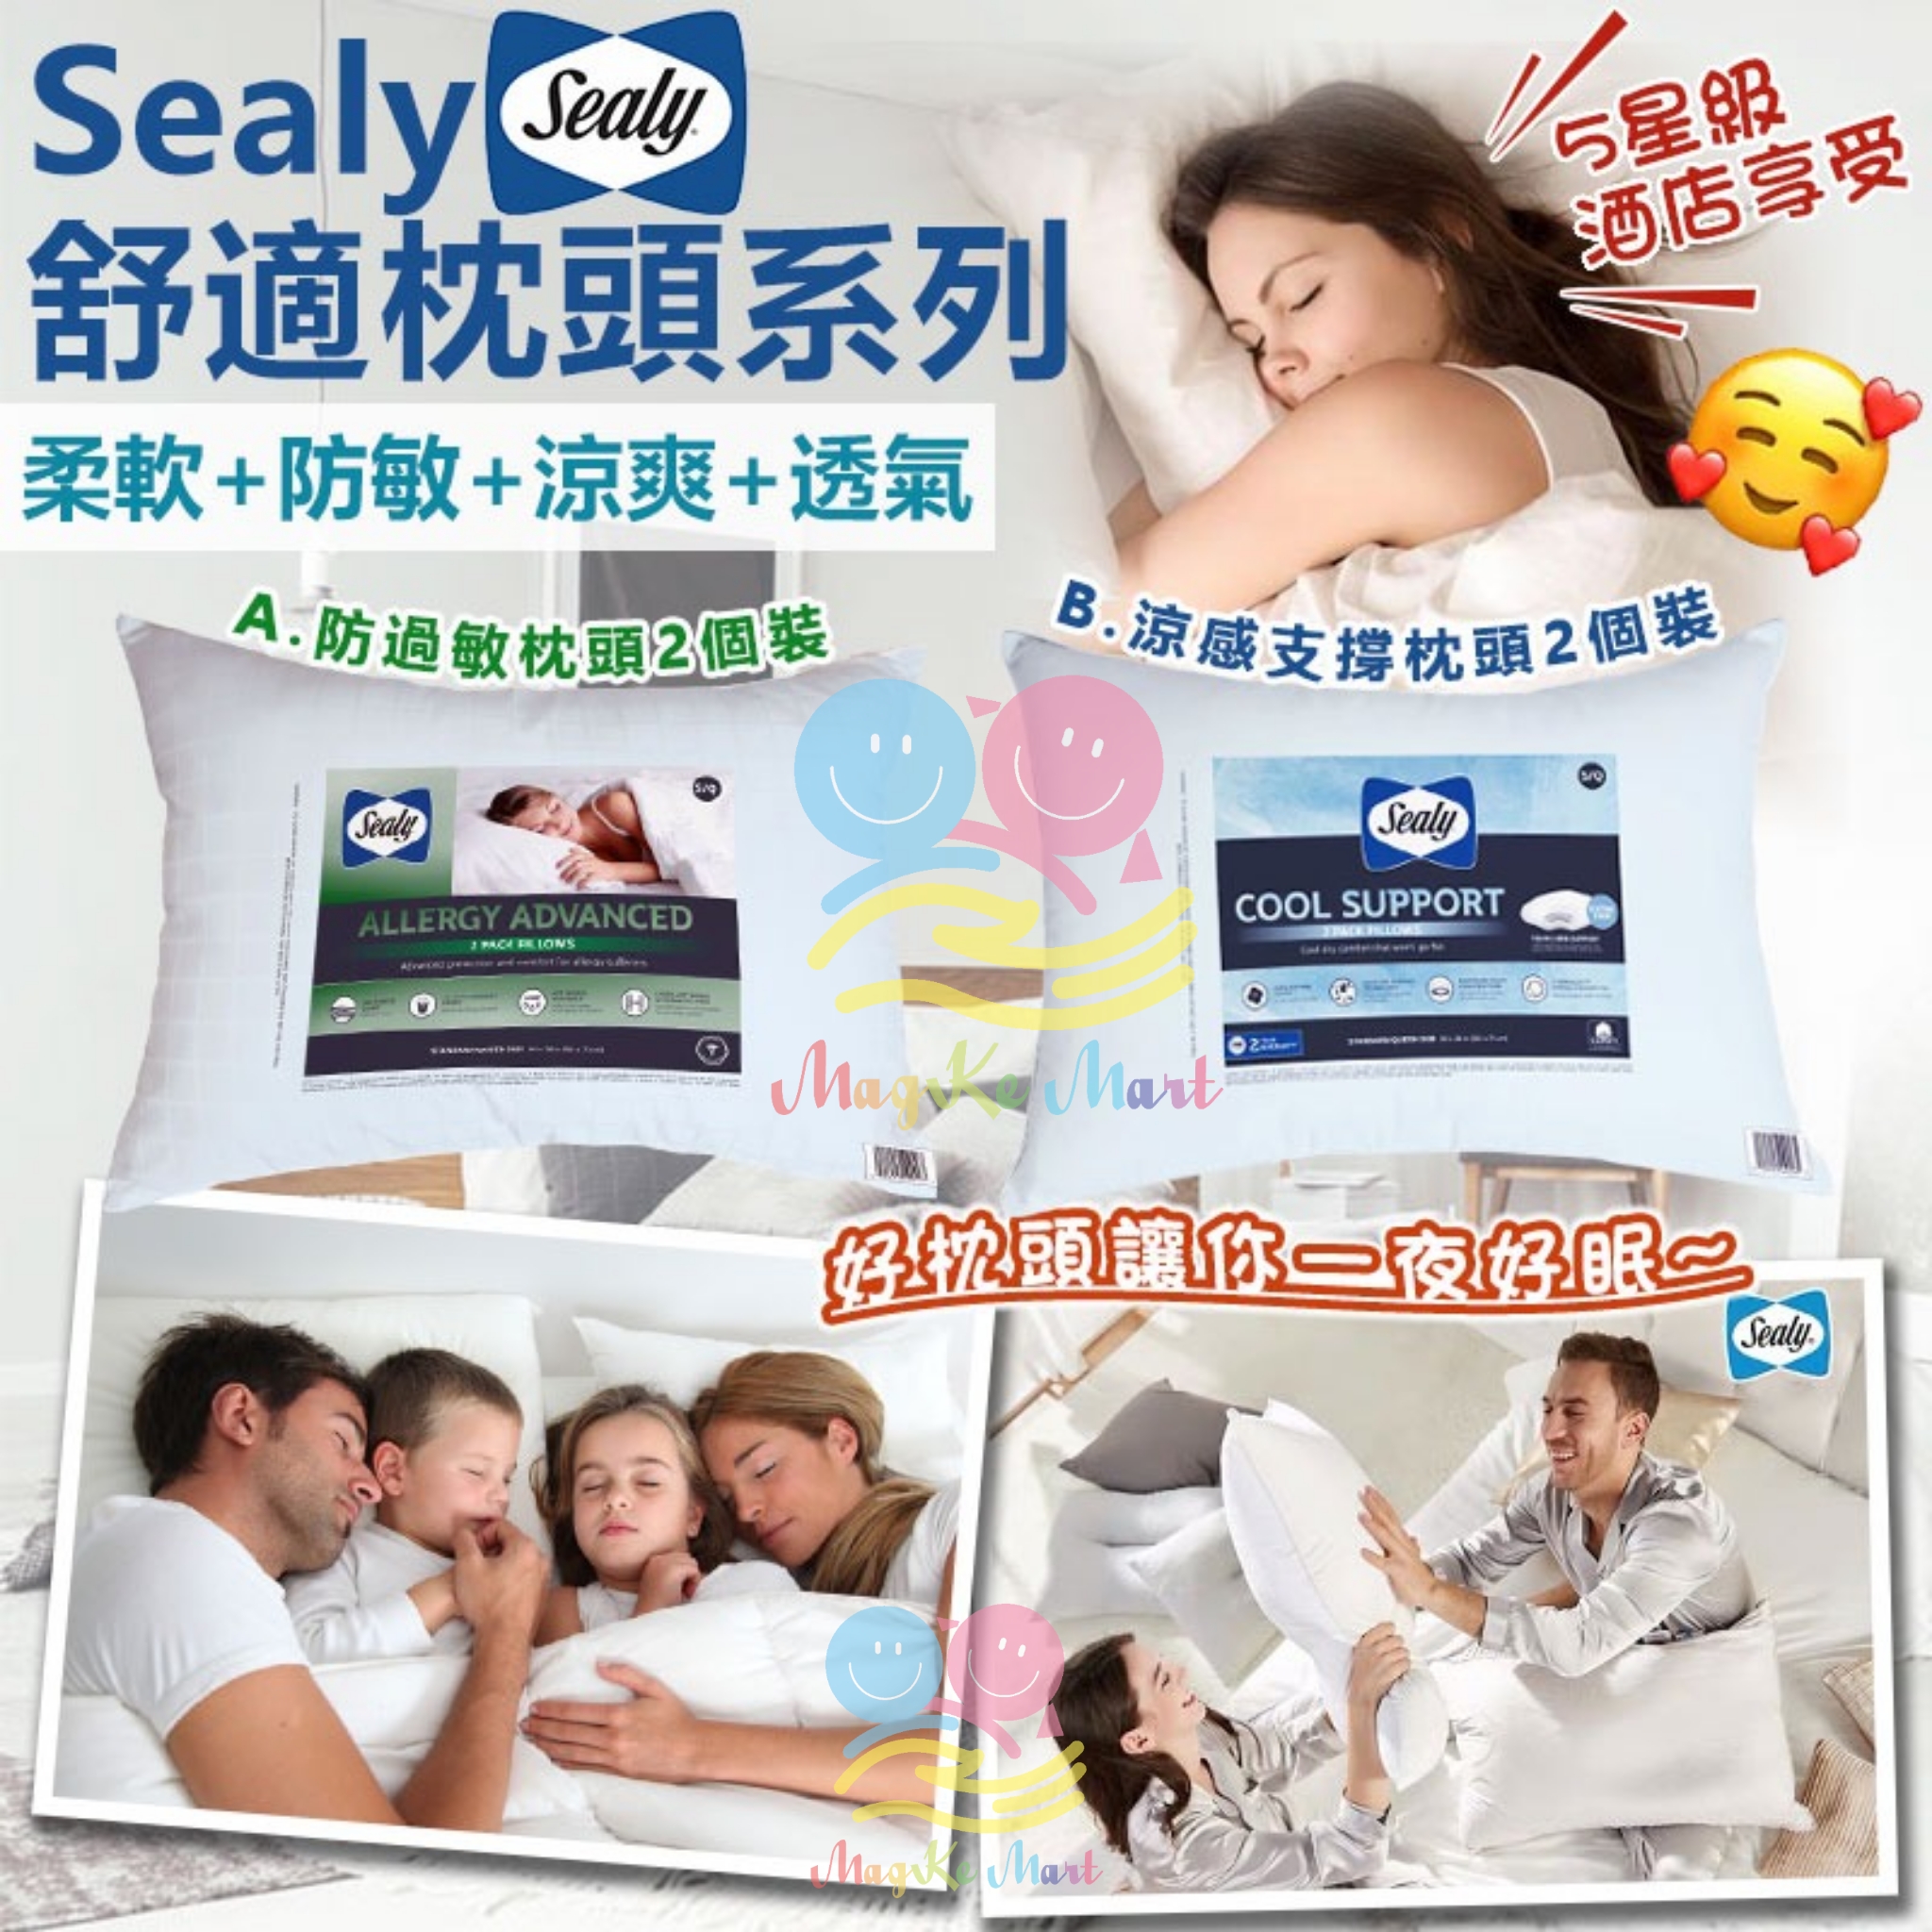 美國 Sealy 舒適枕頭系列 (B) 涼感支撐枕頭2個裝